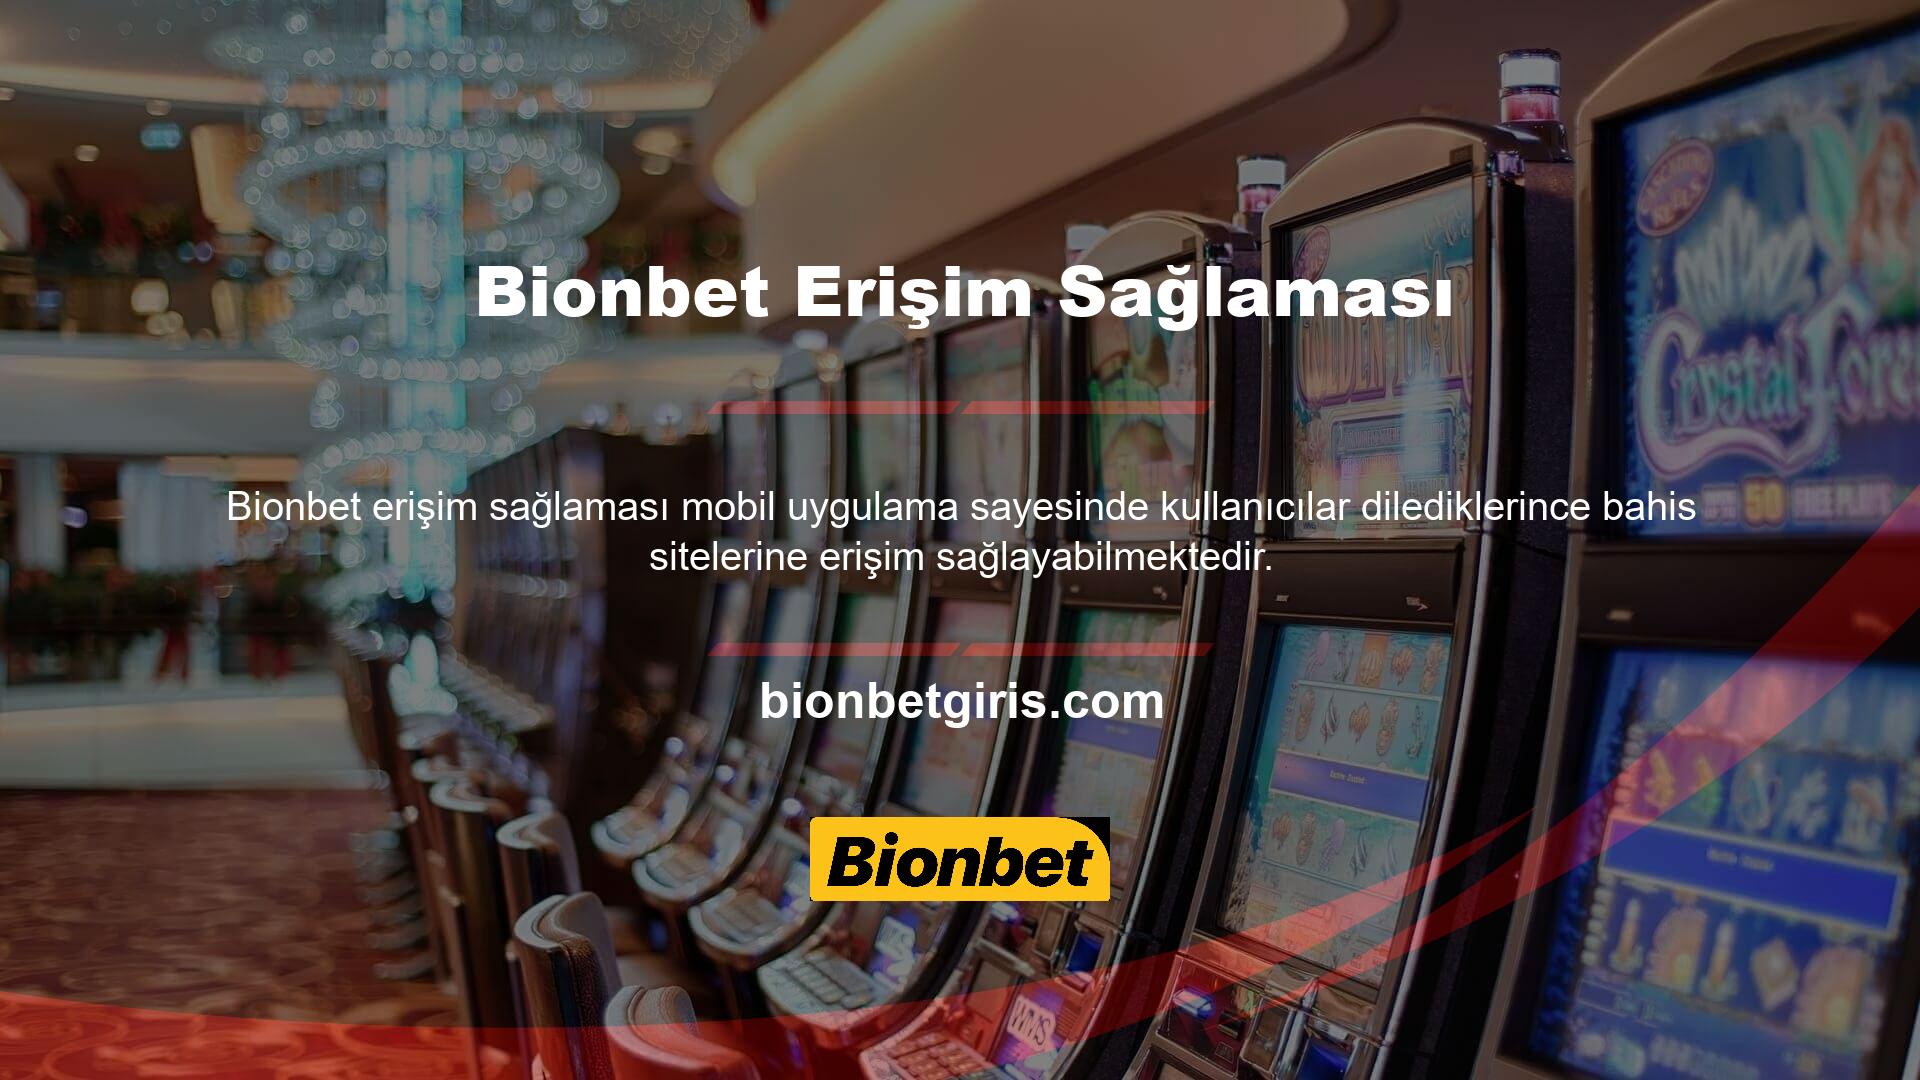 Bildiğiniz gibi Türk casino sitelerinde bulunan ödeme teknolojilerinin birçoğu üyelerin kolaylıkla yatırım yapmasına olanak tanıyor ancak bunları sorunsuz bir şekilde kullanamayabilirler